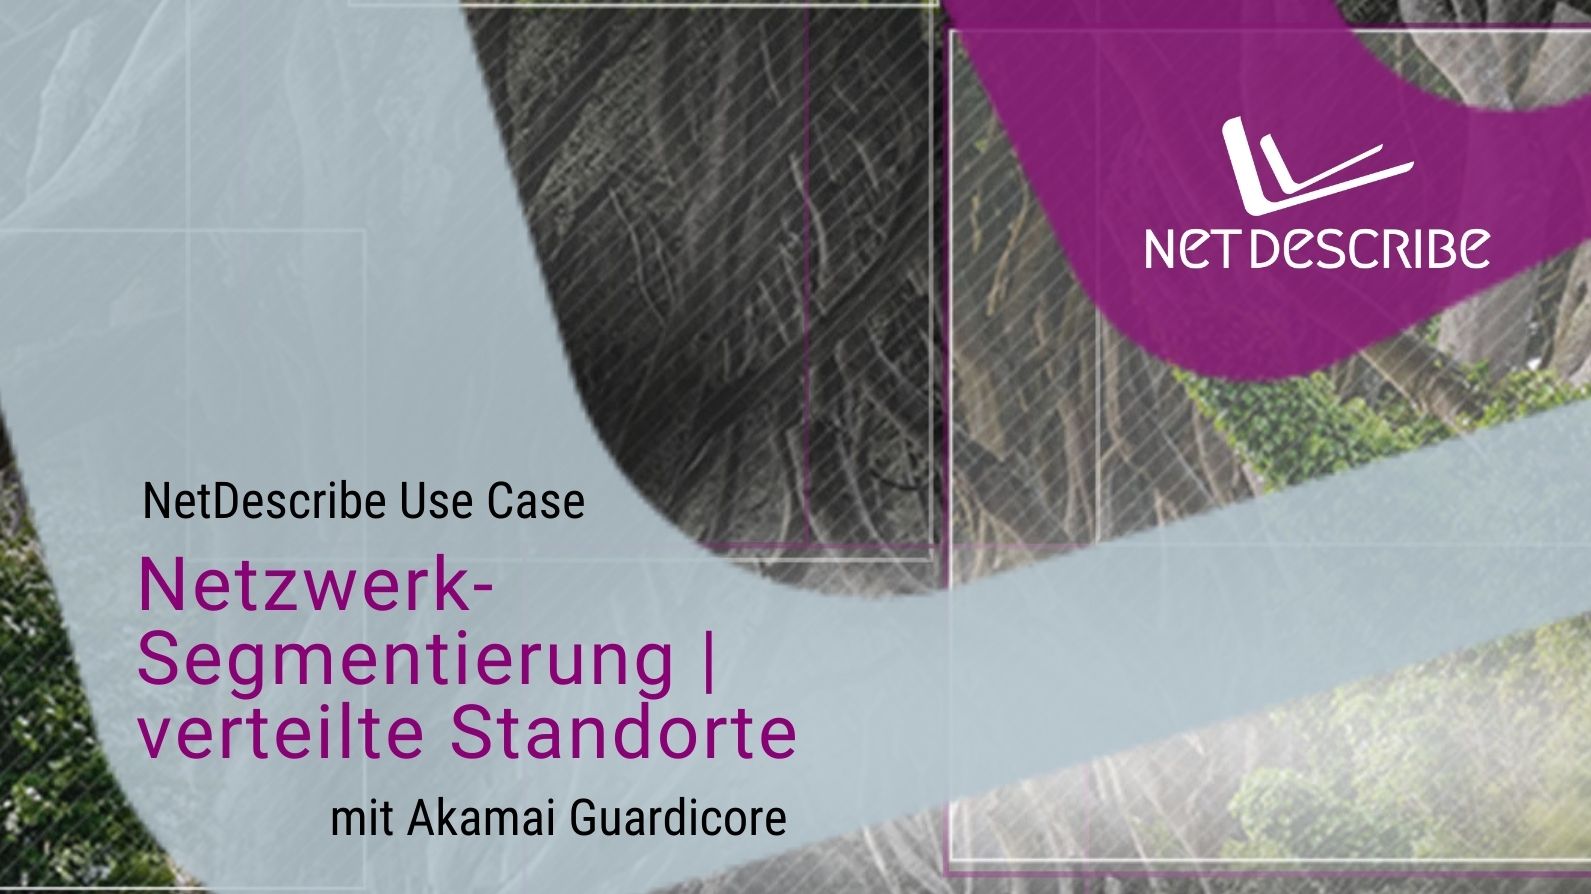 NetDescribe Use Case Netzwerksegmentierung verteilte Standorte